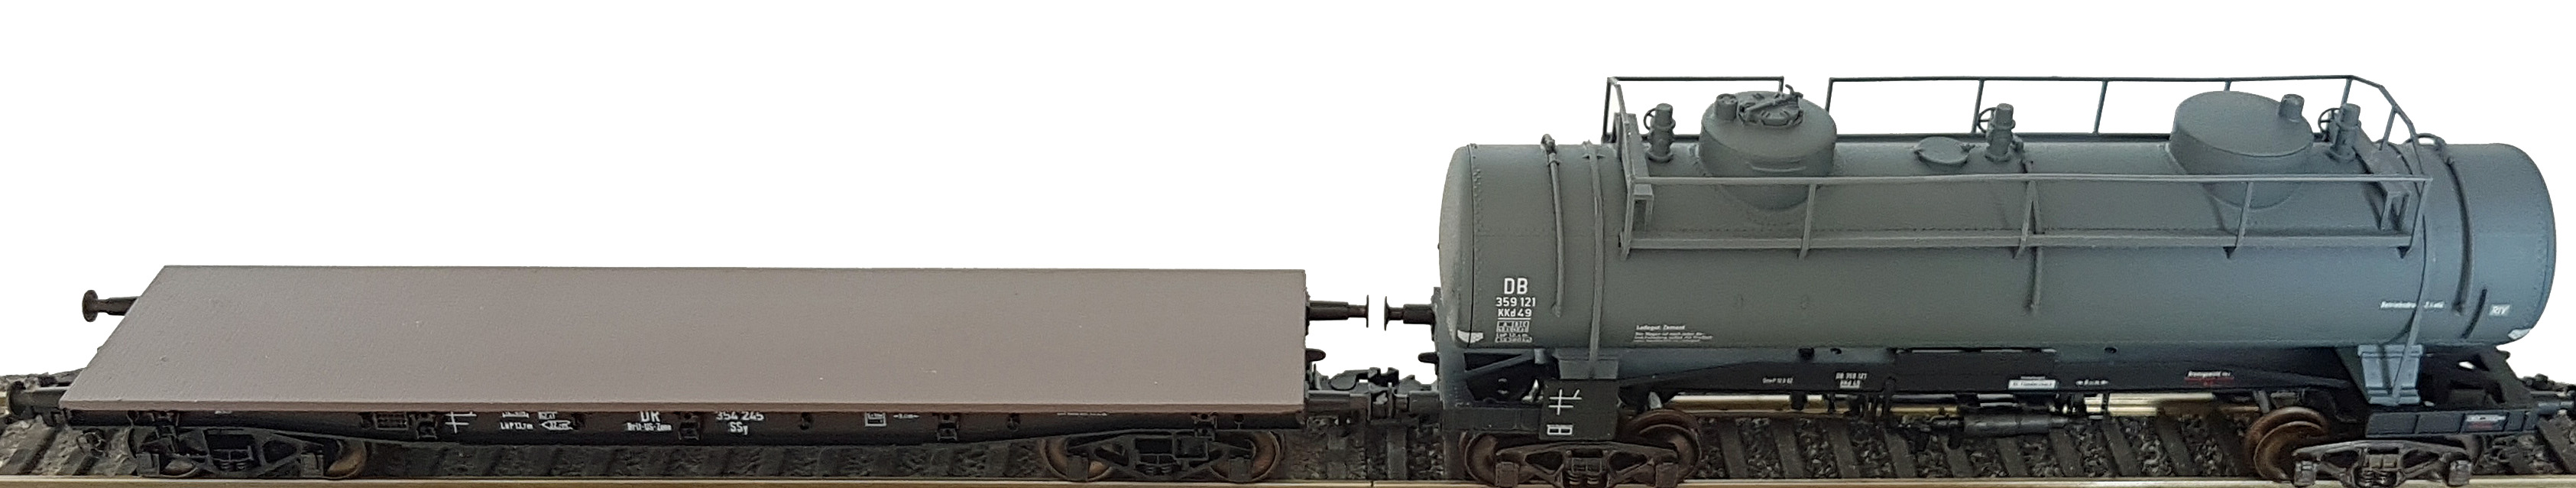 Klein Modellbahn SSy49 und Roco Kkd49